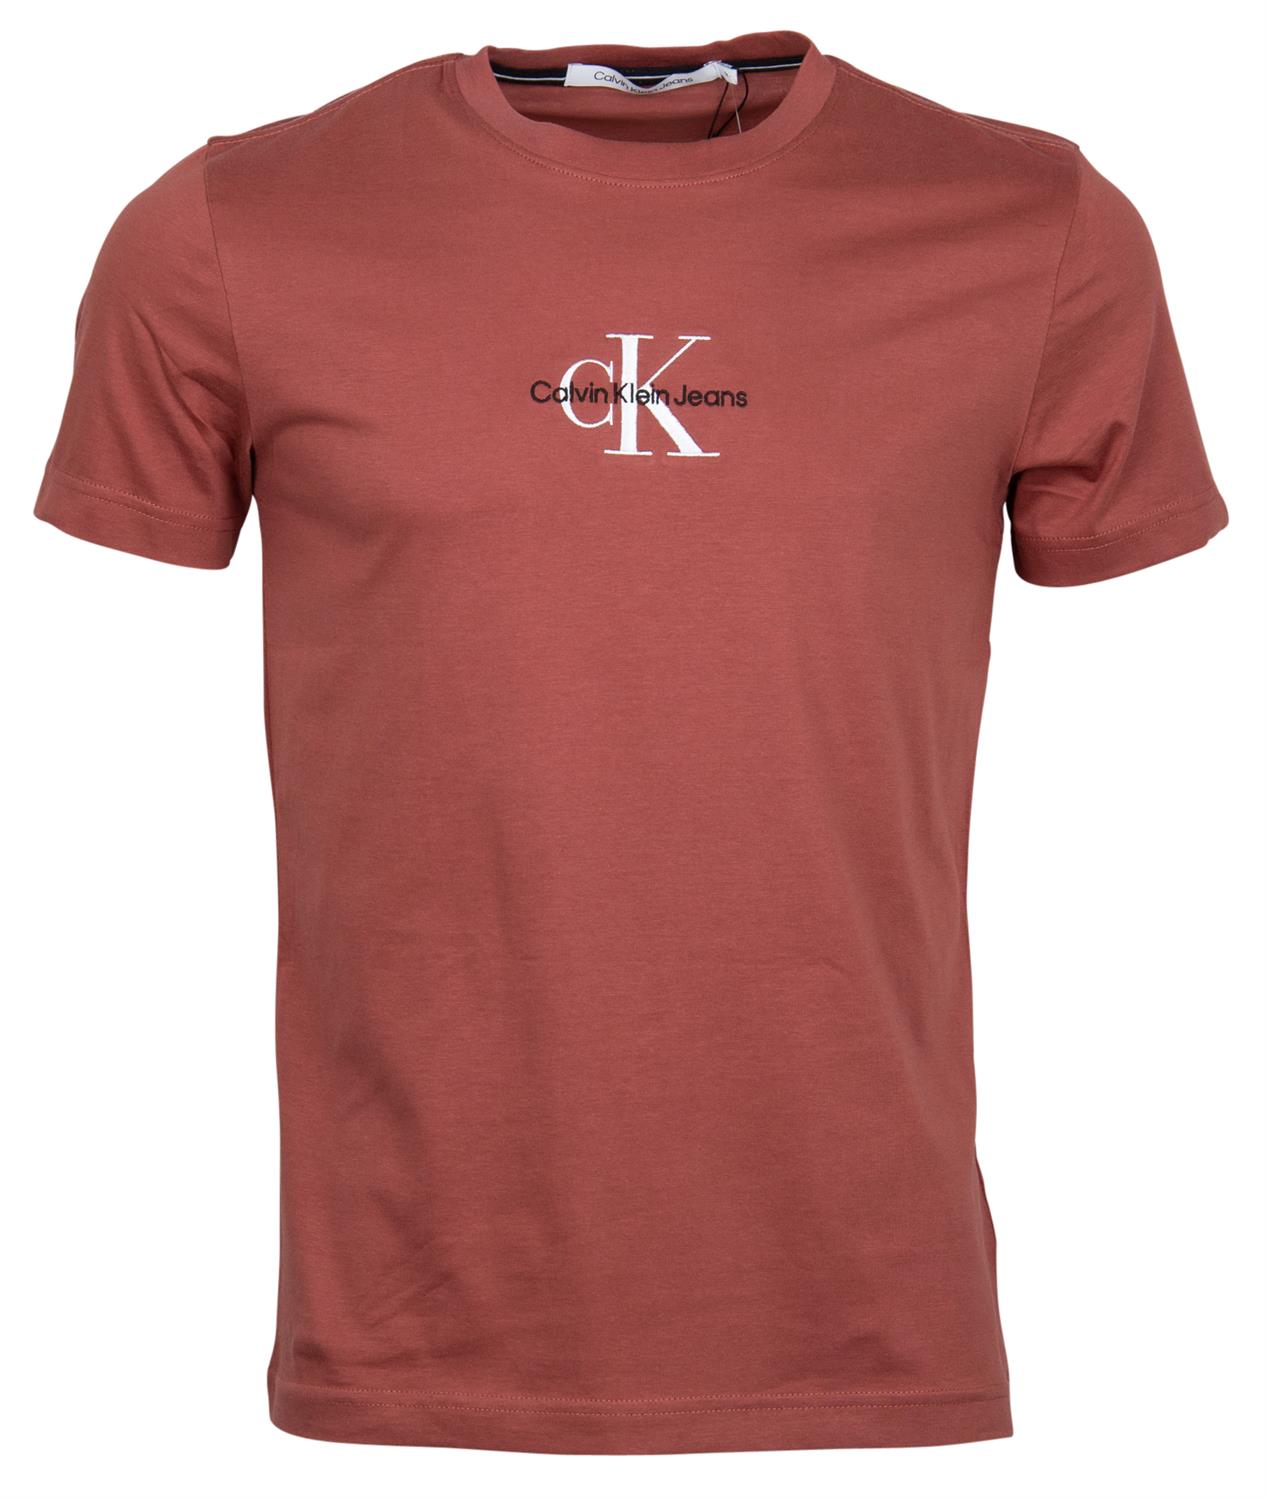 Calvin Klein Jeans Herren T-Shirt Monogram Logo Tee - T-Shirt aus Baumwolle  rot bequem online kaufen bei